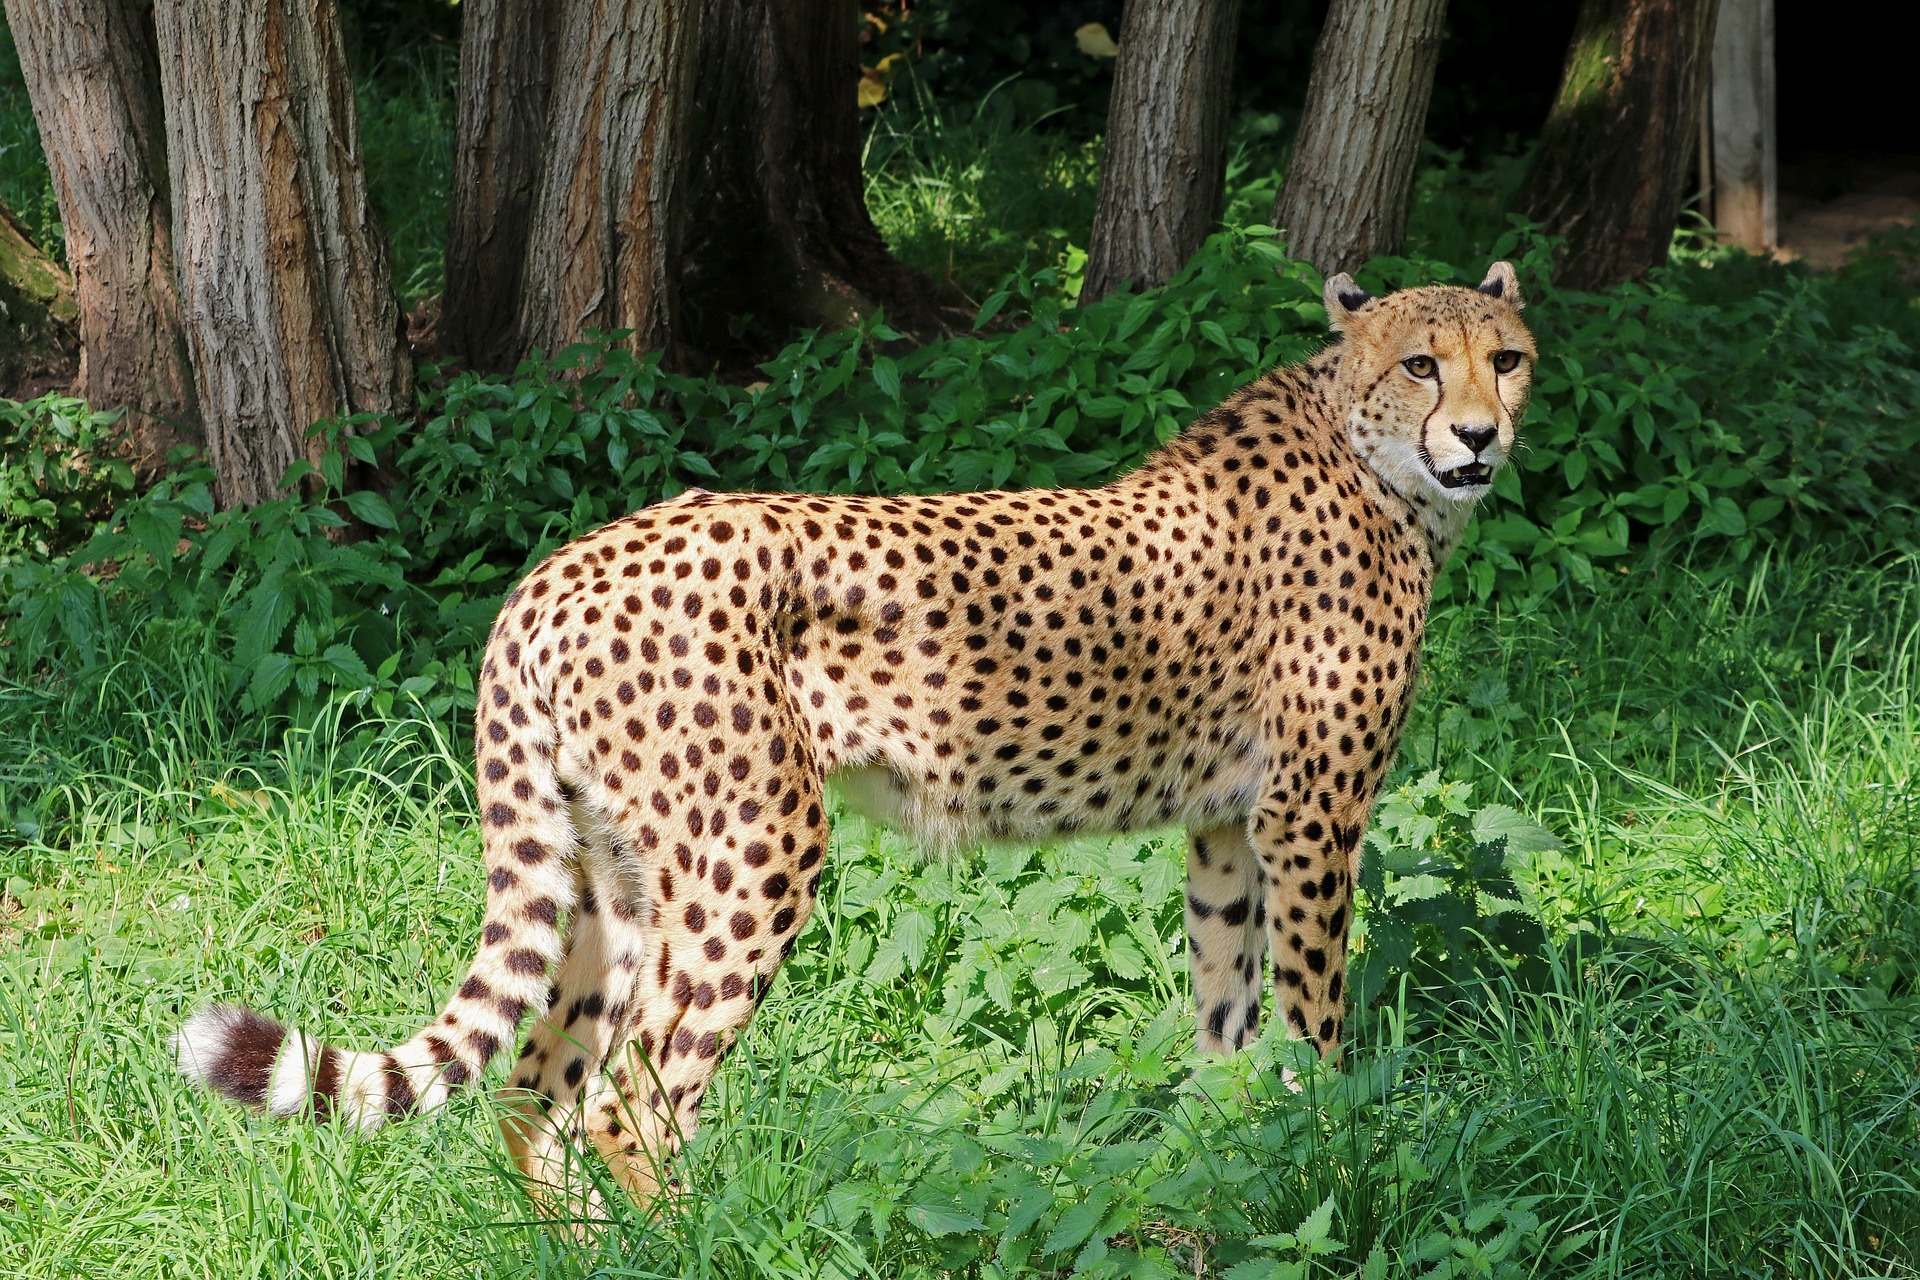 How fast can a cheetah run?